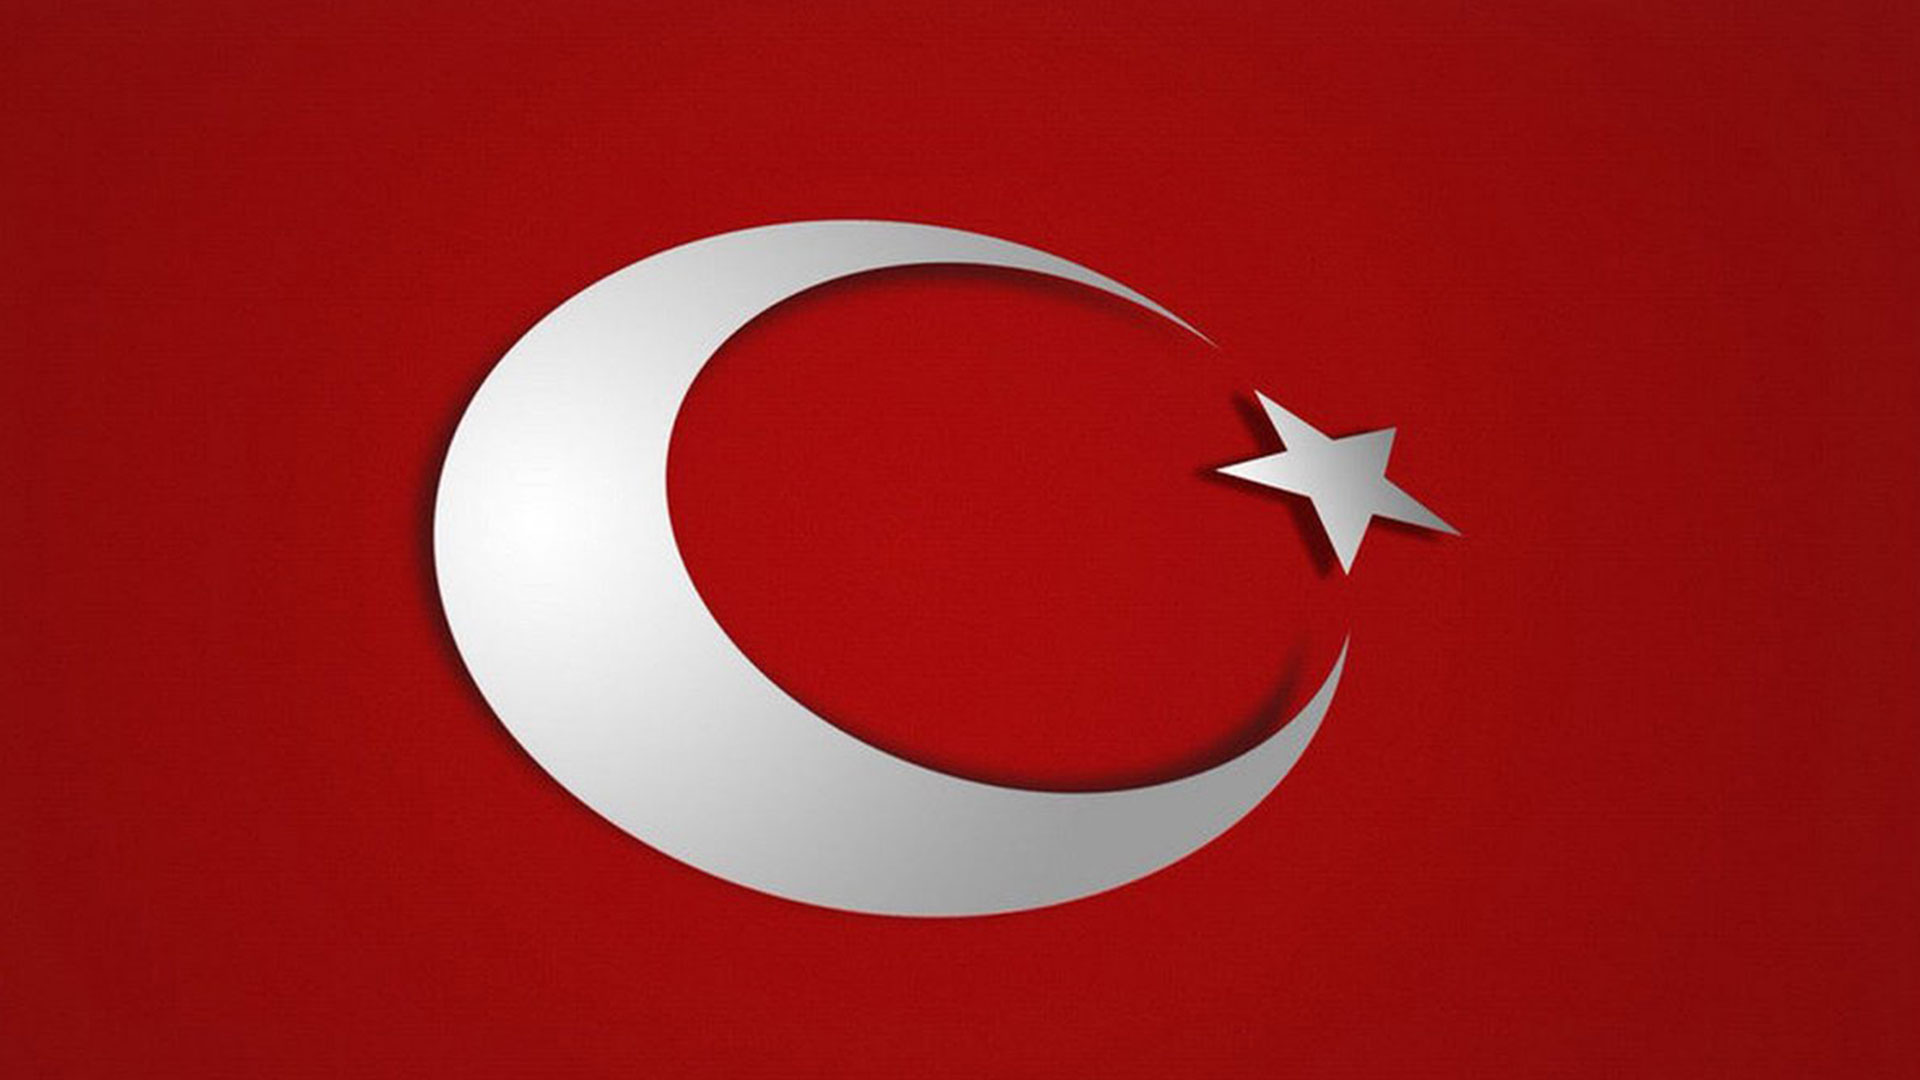 turk bayragi resimleri 2020 13